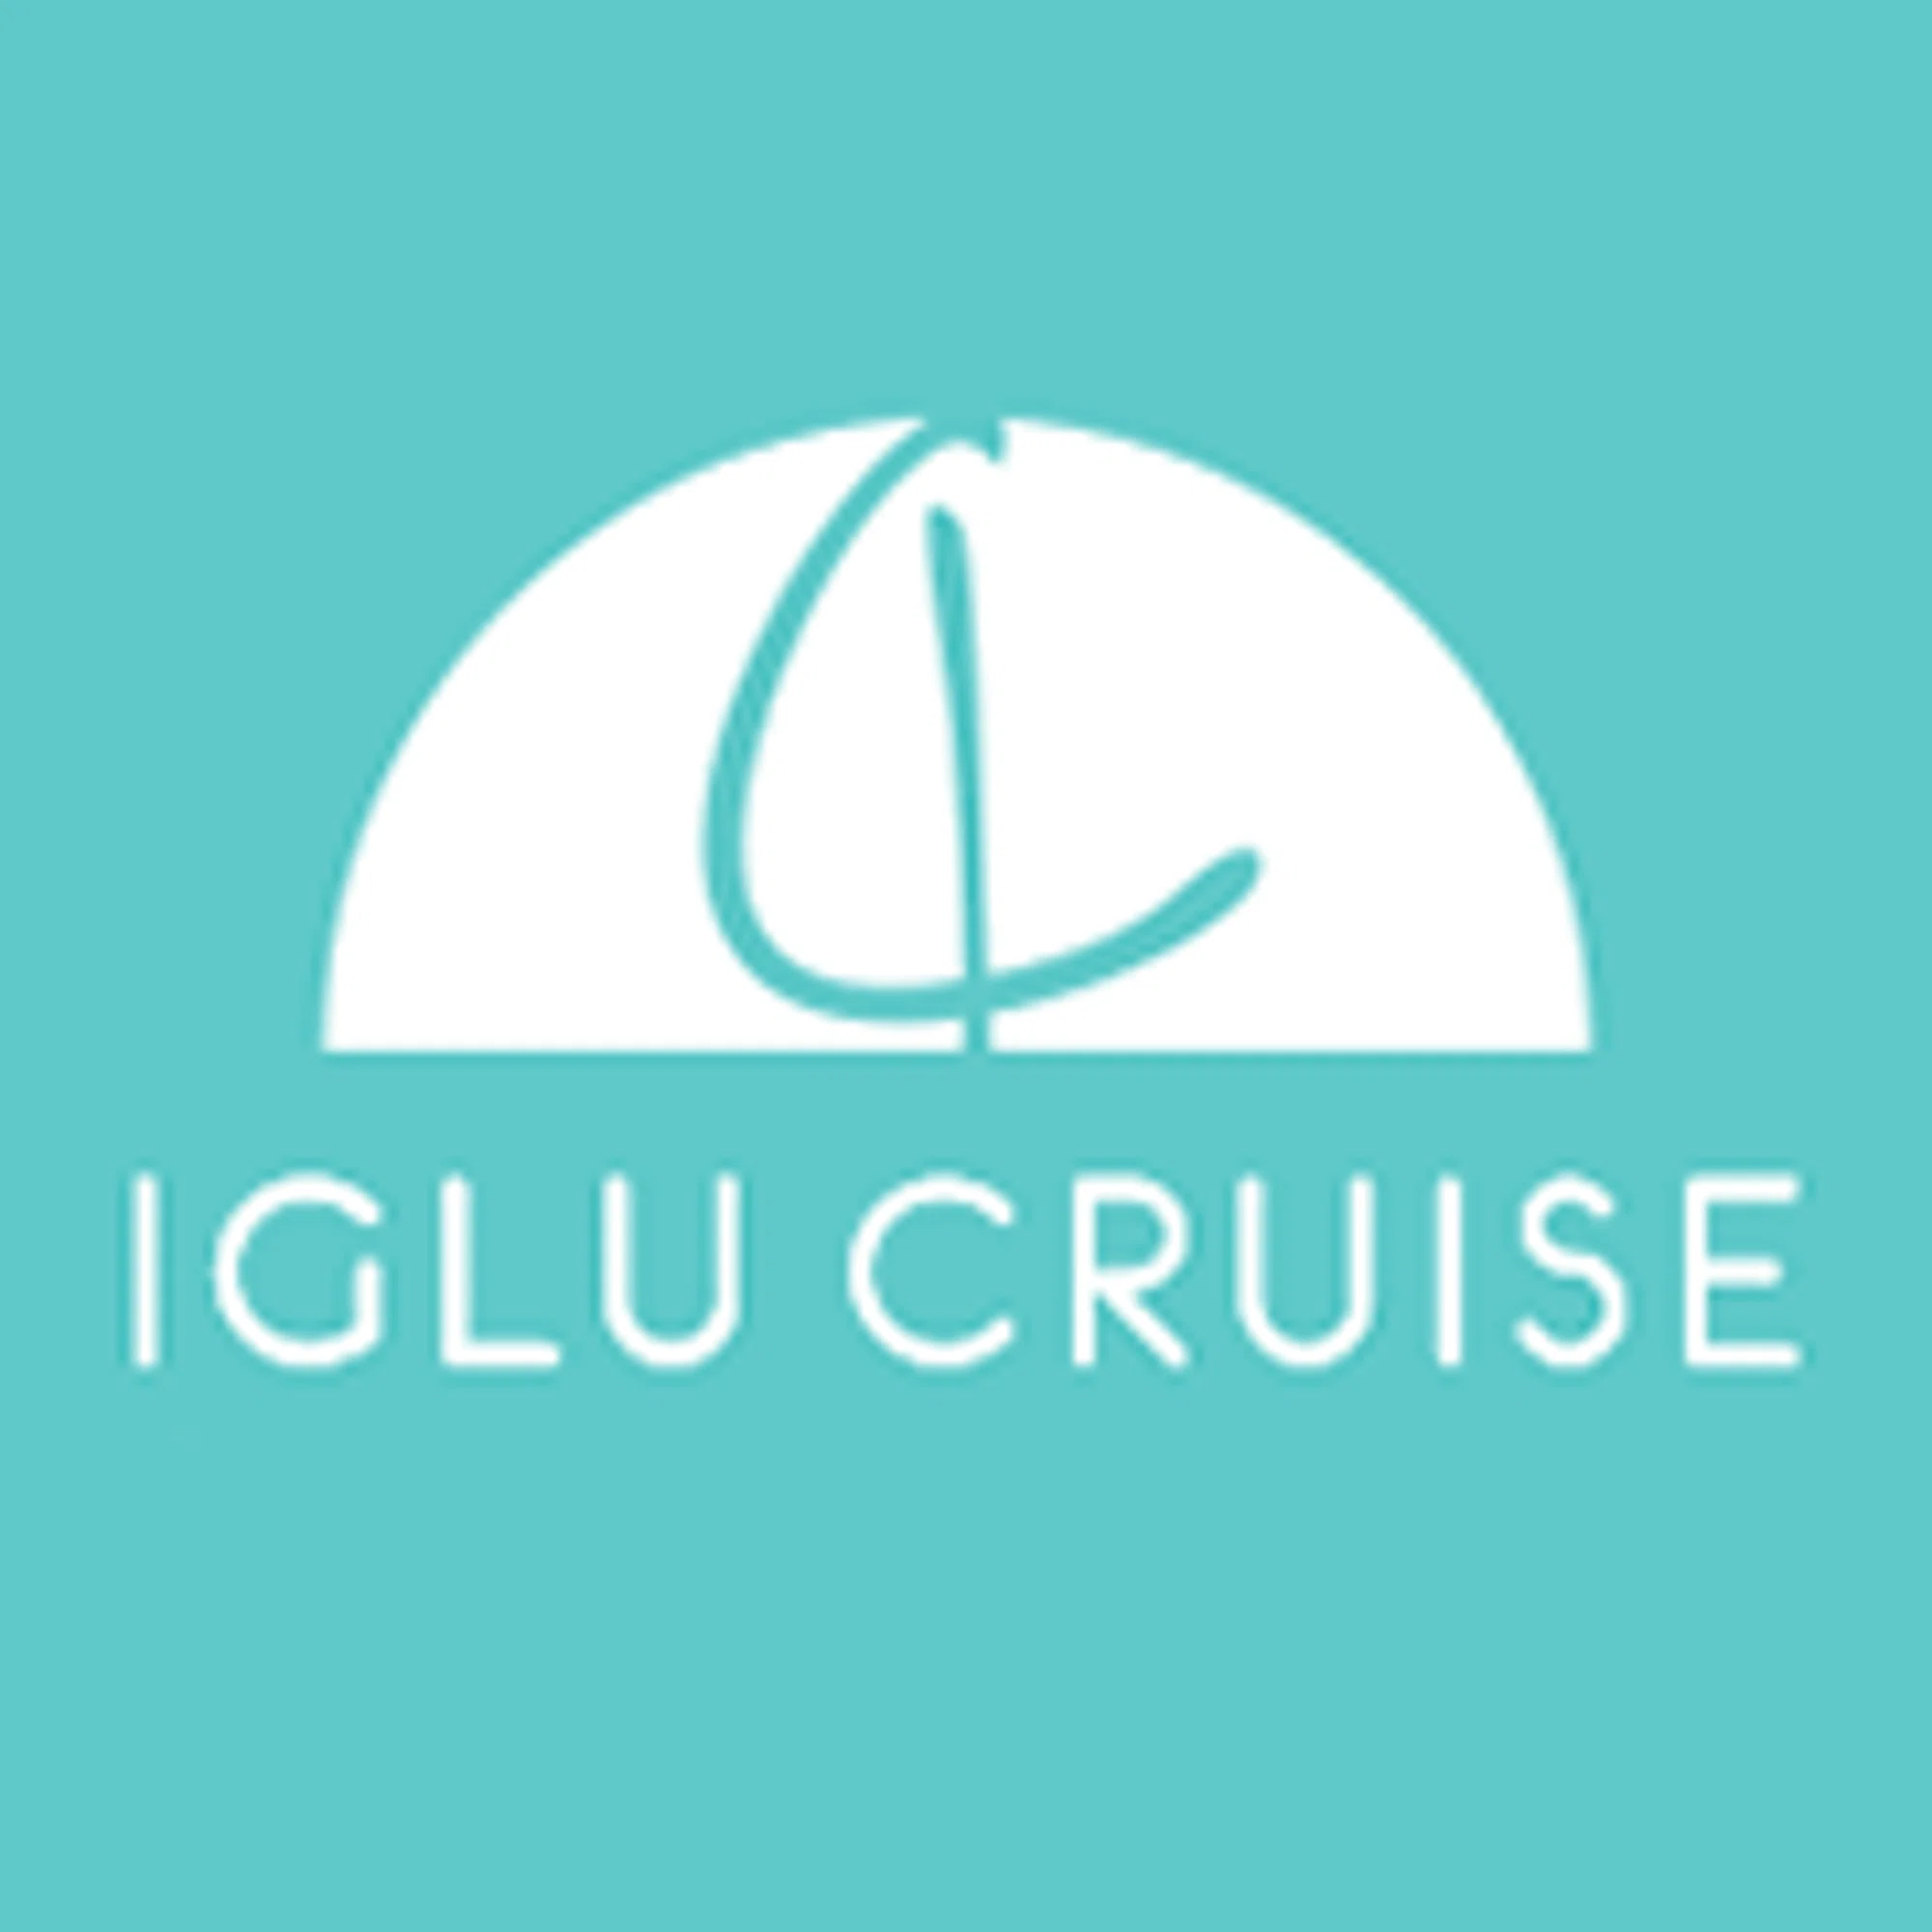 iglu cruise promotion code